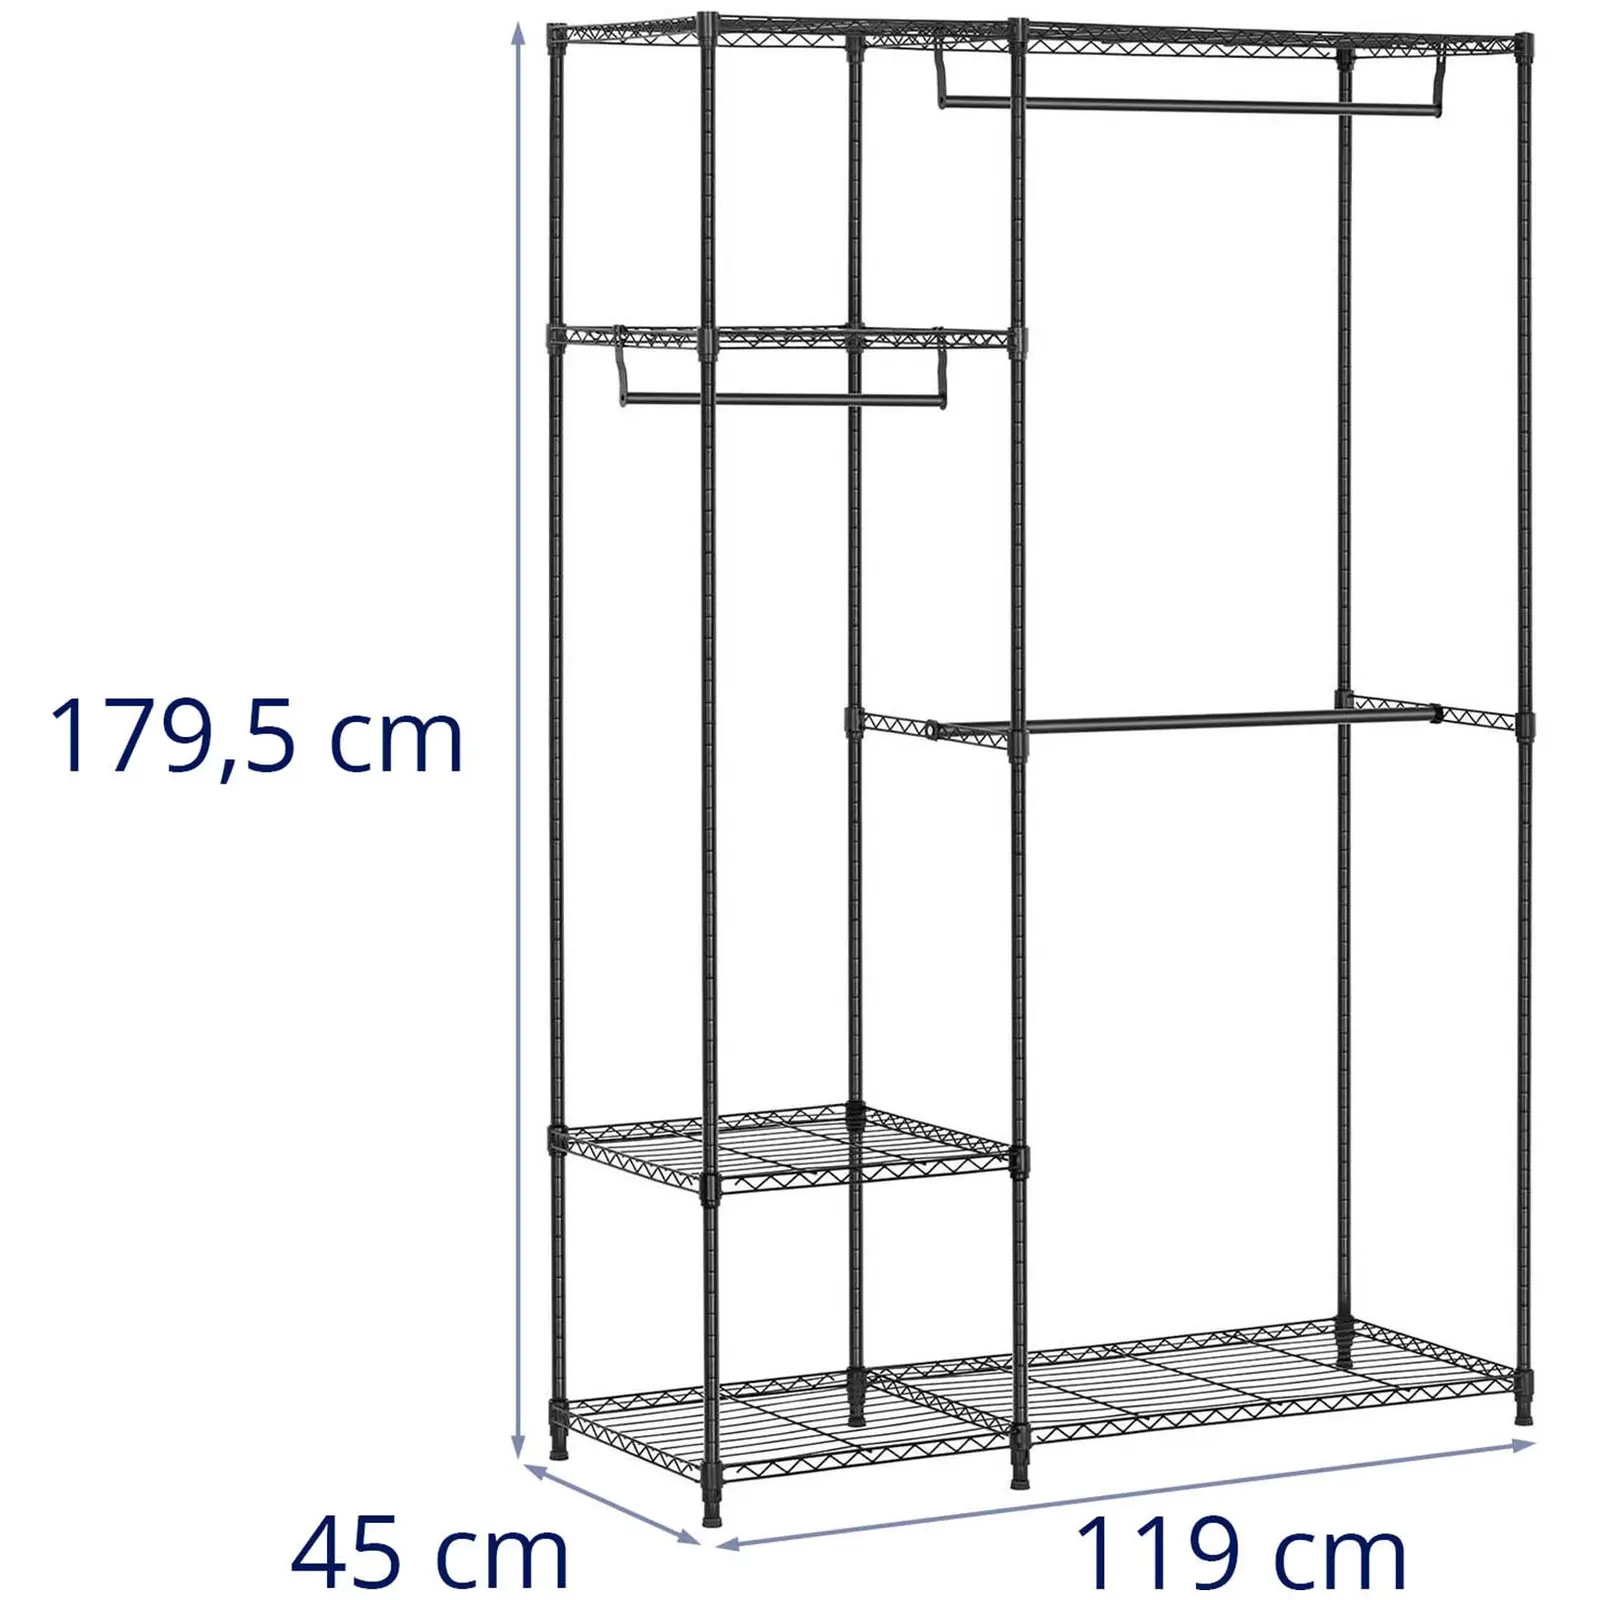 Stand appendiabiti in filo metallico - 120 x 45 x 179,5 cm - 270 kg - nero